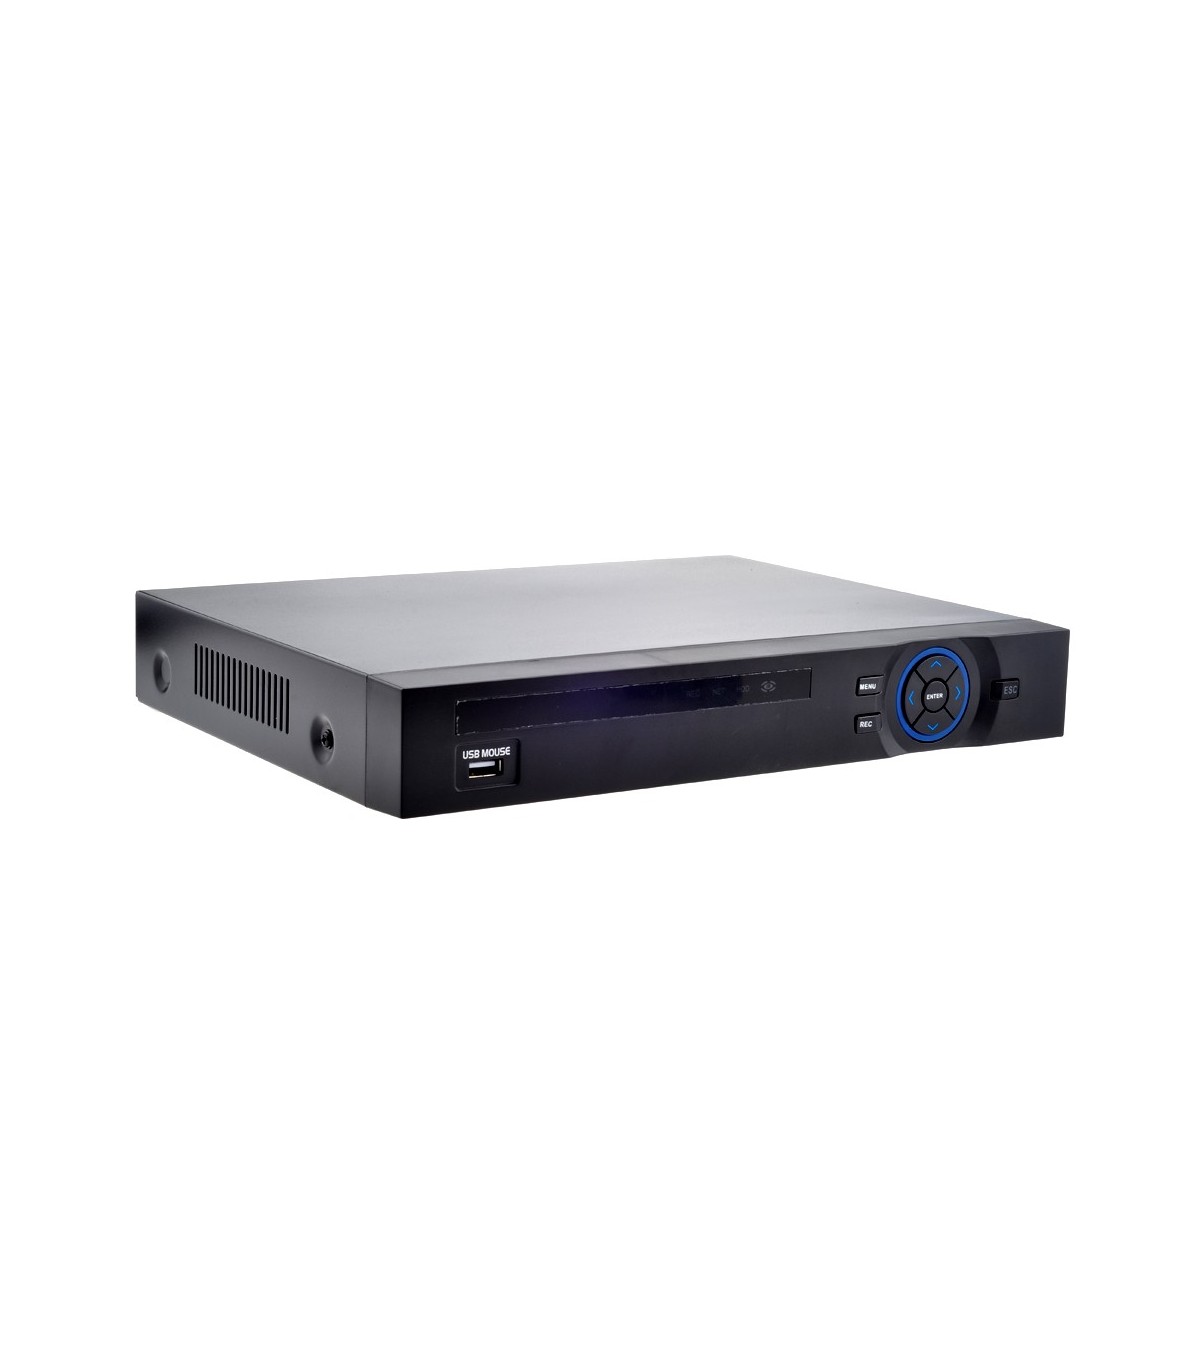 Enregistreur vidéo numérique DVR Premax 4 ports meilleur prix en